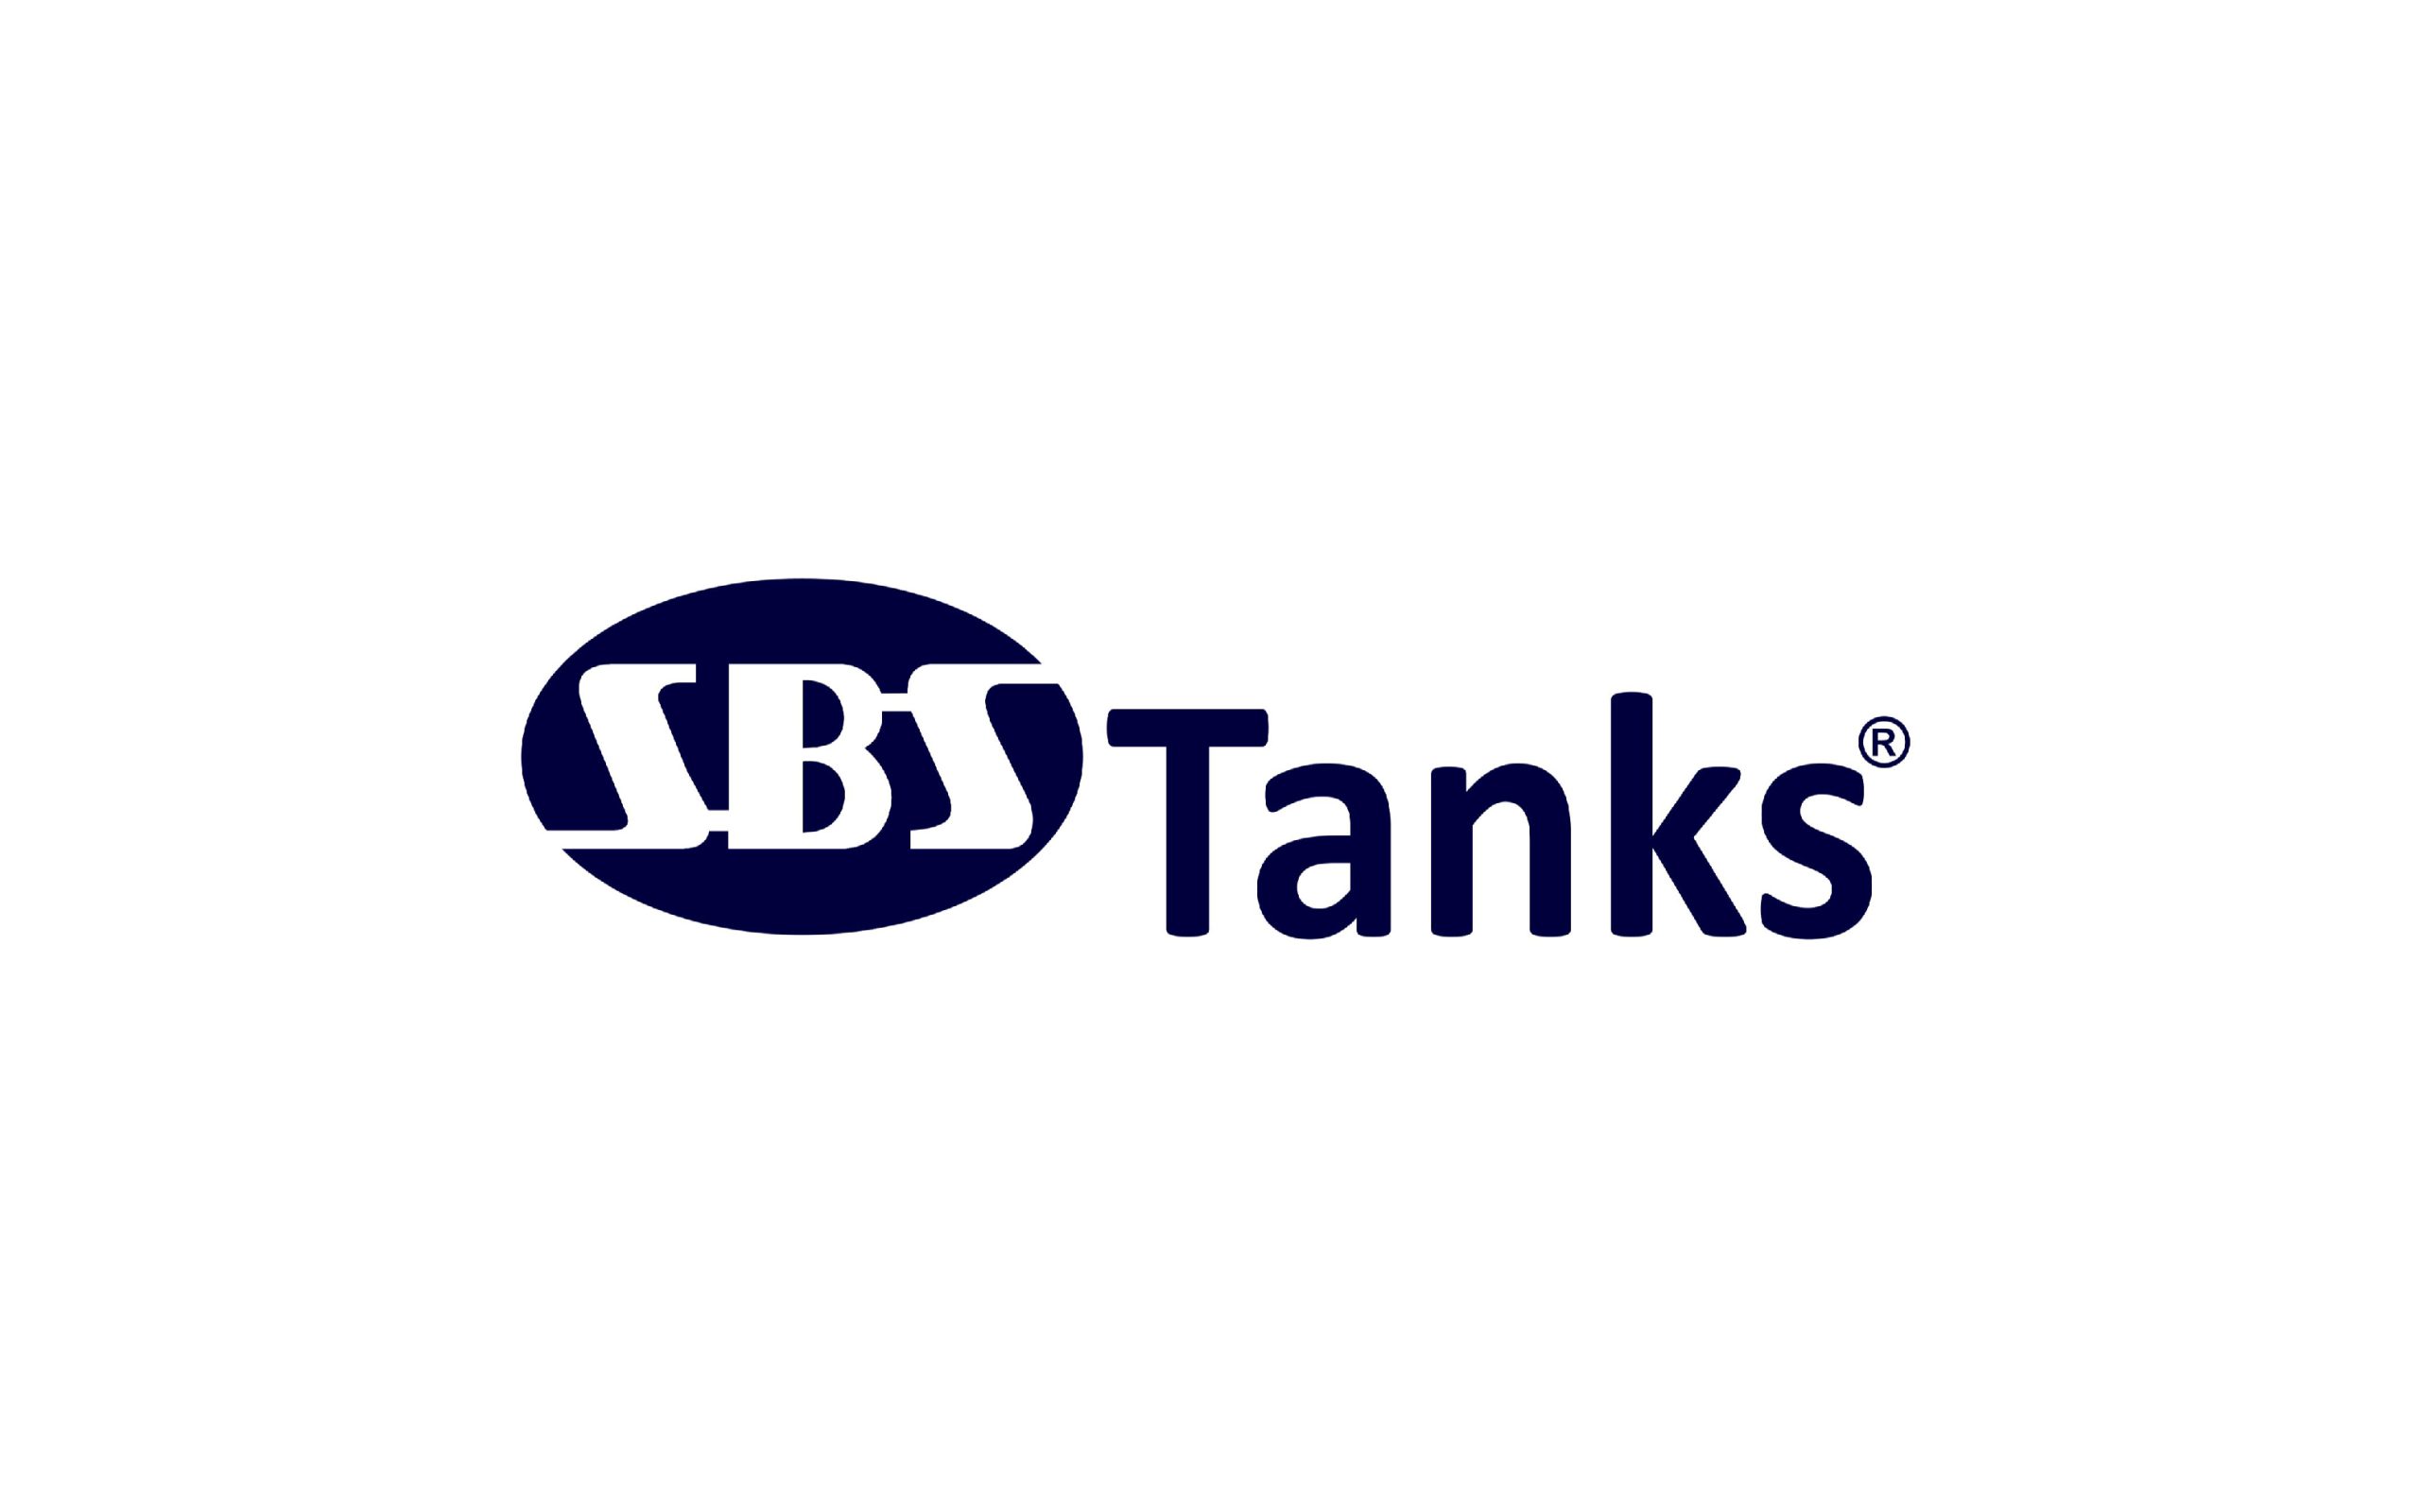 SBS Tanks